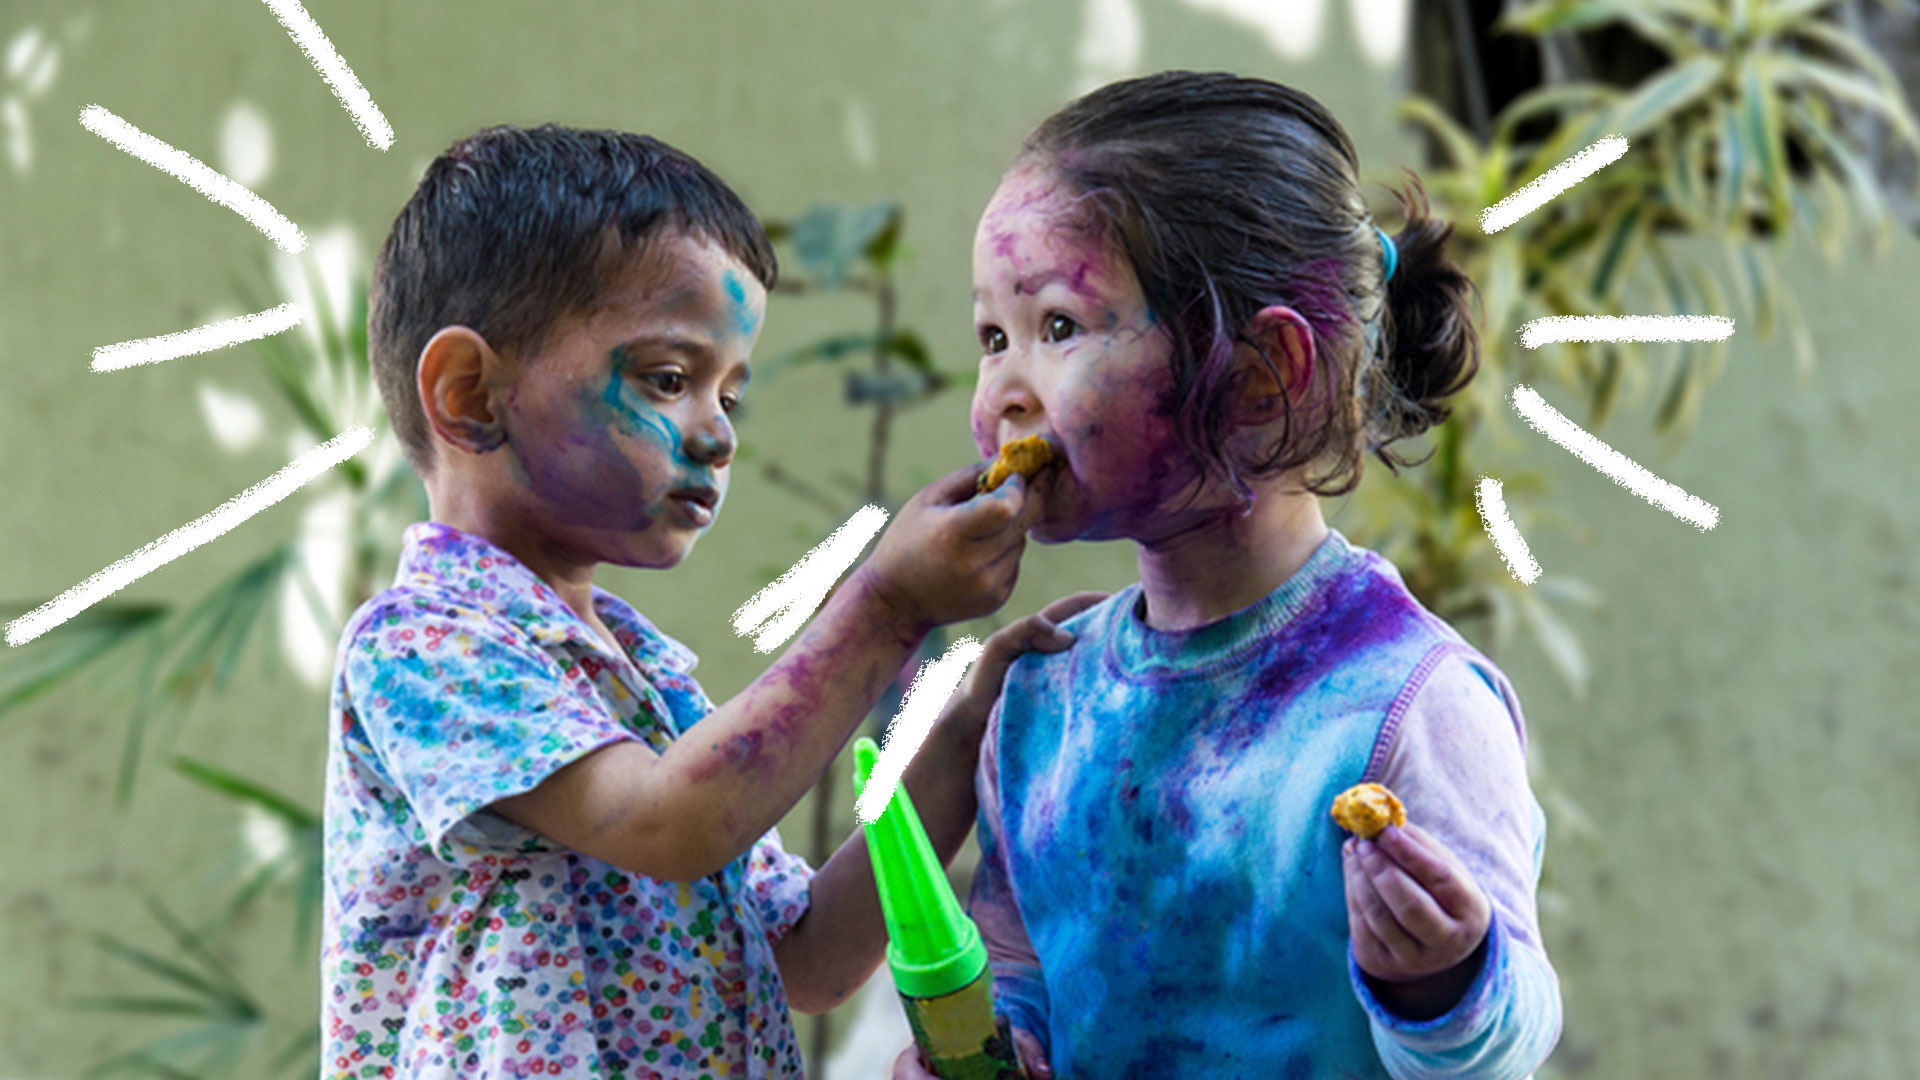 Um menino e uma menina brincando de atirar tinta um no outro no quintal. Eles estão lambuzados de tinta azul e roxa.